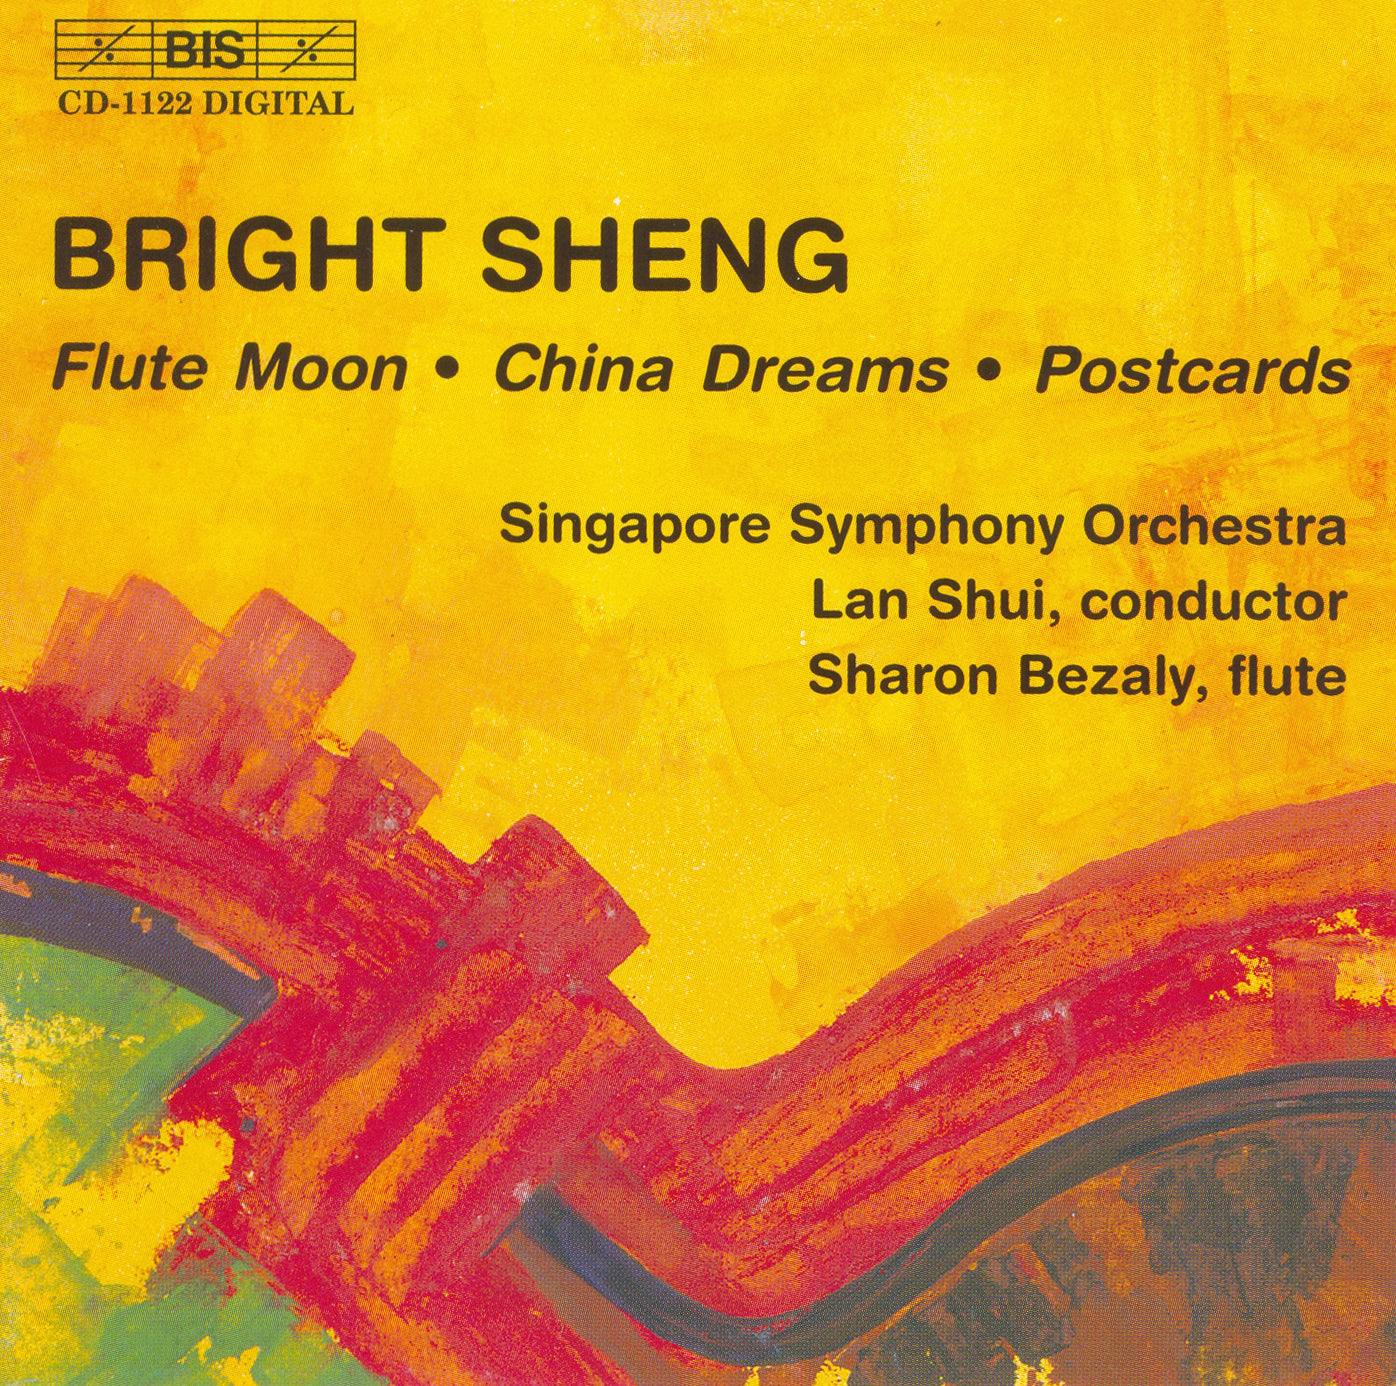 Bright Sheng: Flute Moon - China Dreams - Postcards